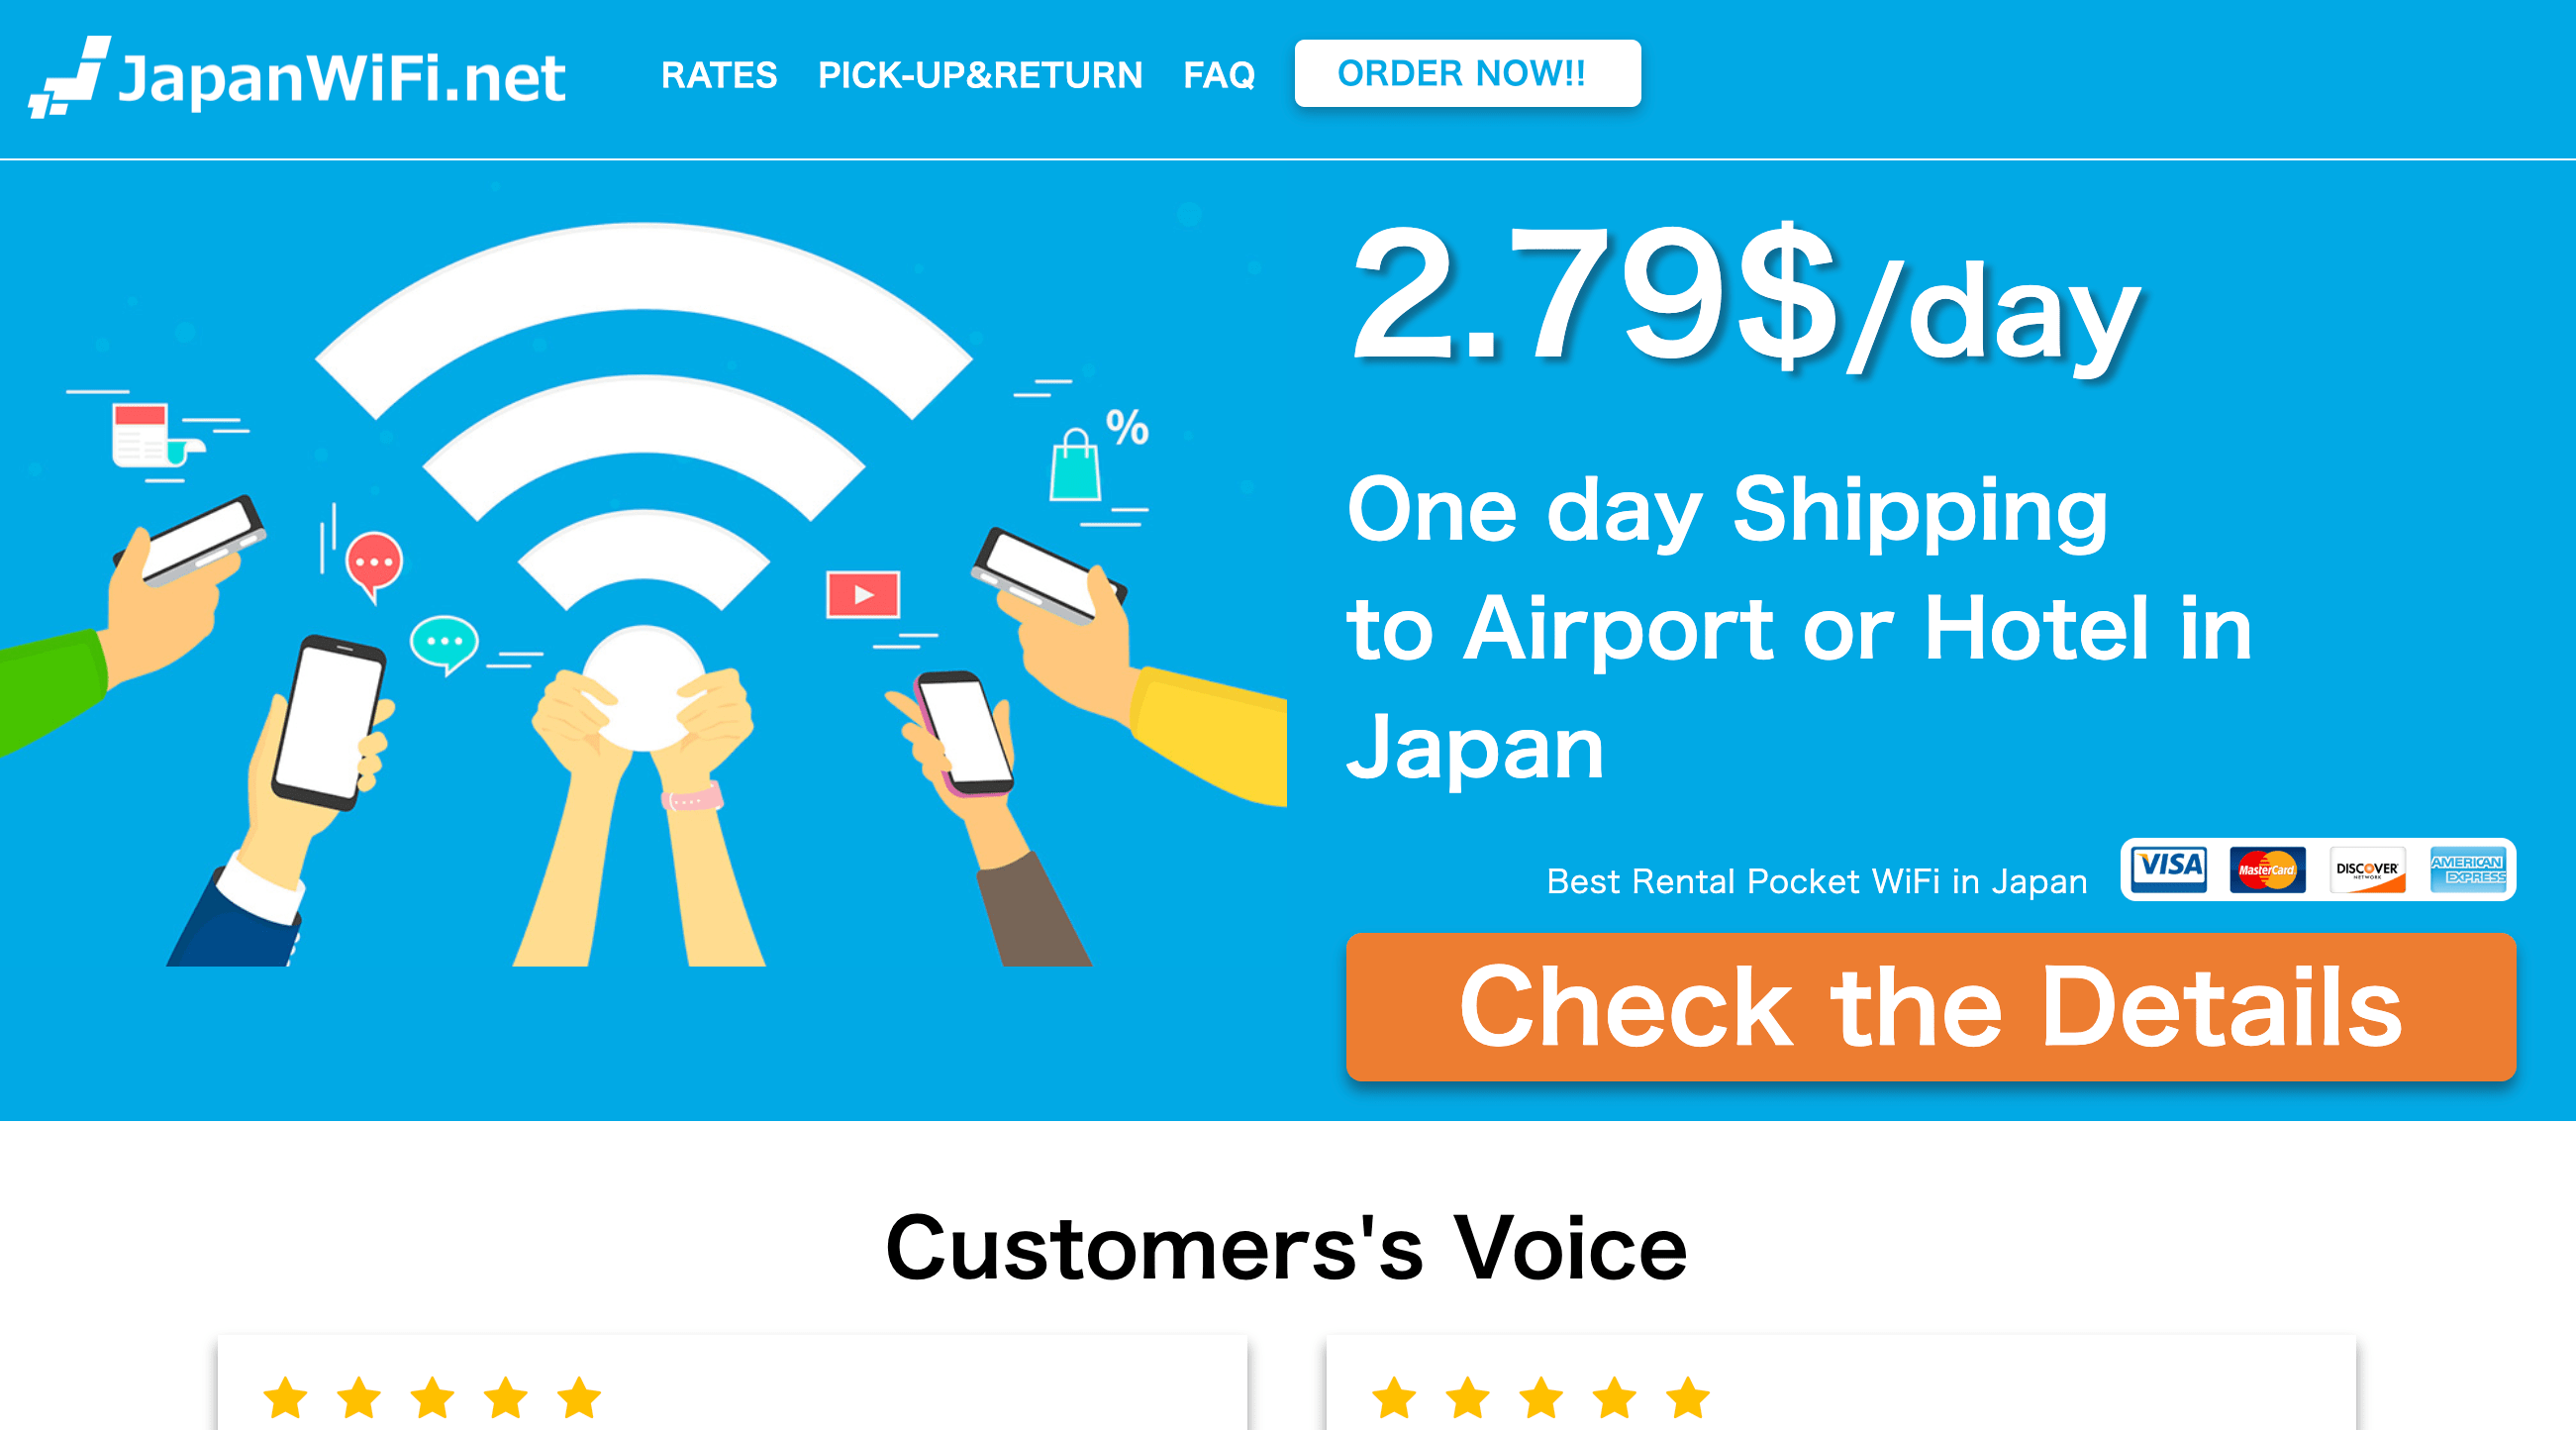 JapanWiFi.net